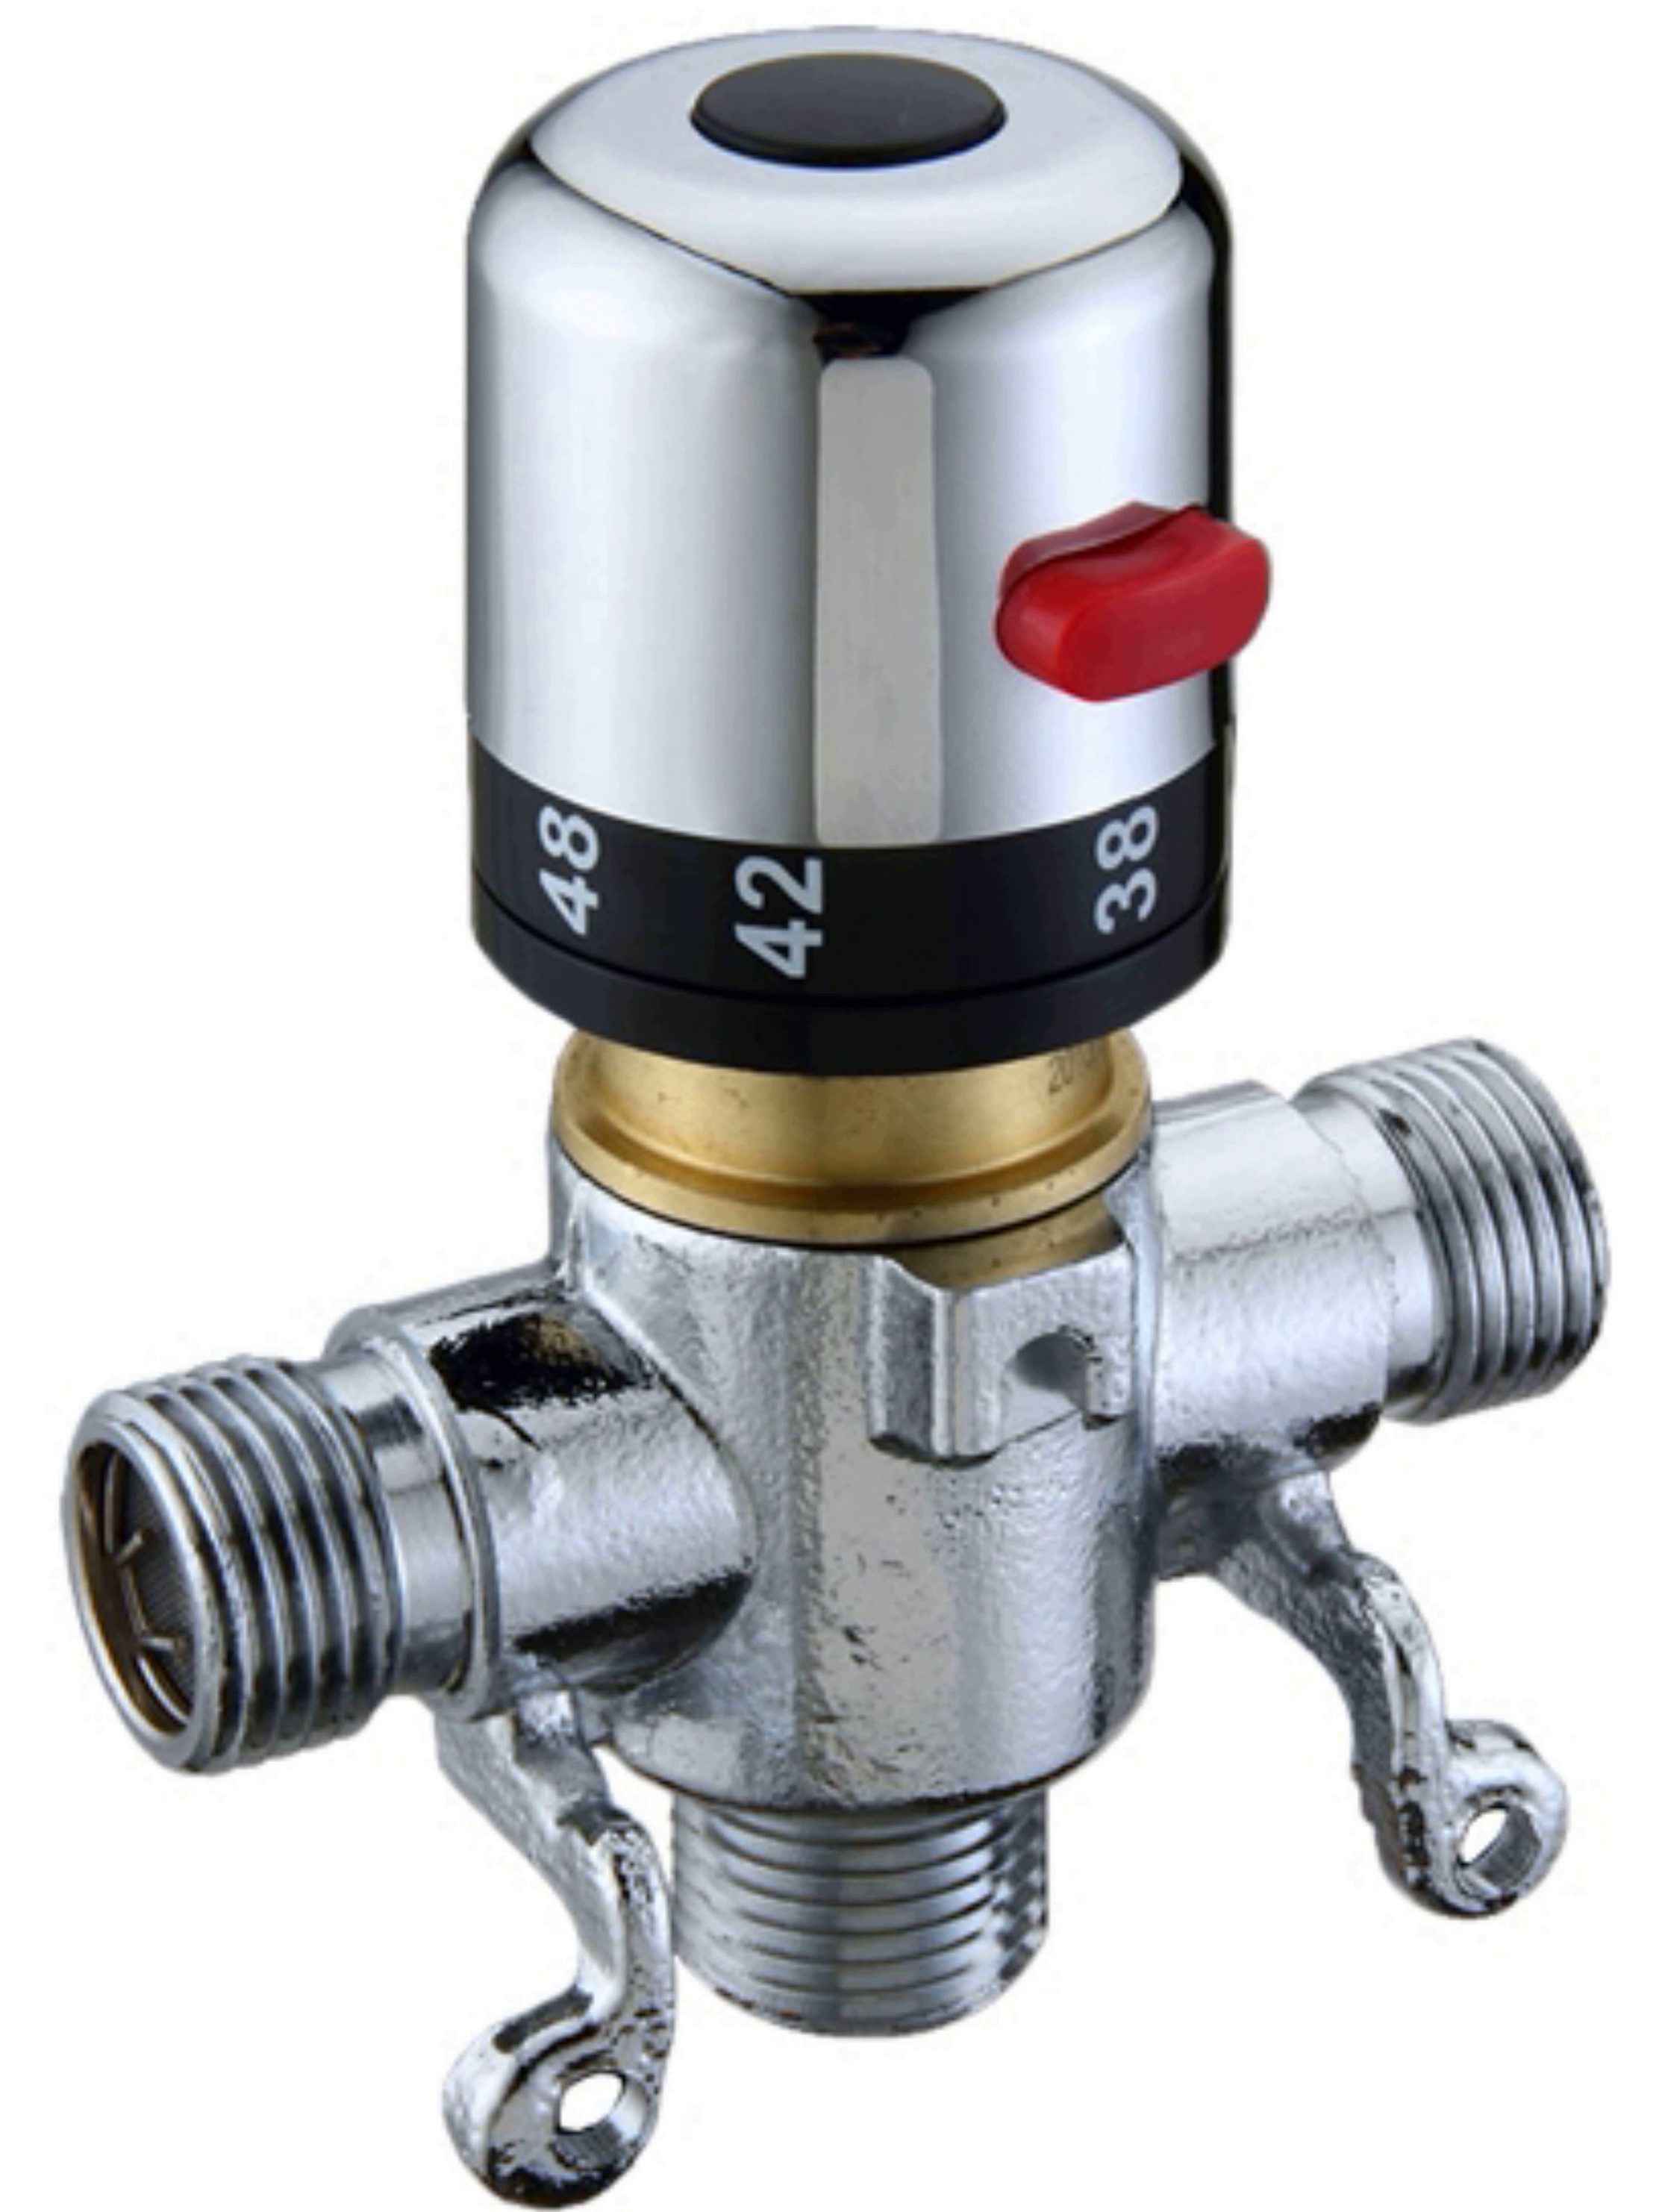 Thermostatic faucet KR 532 12D